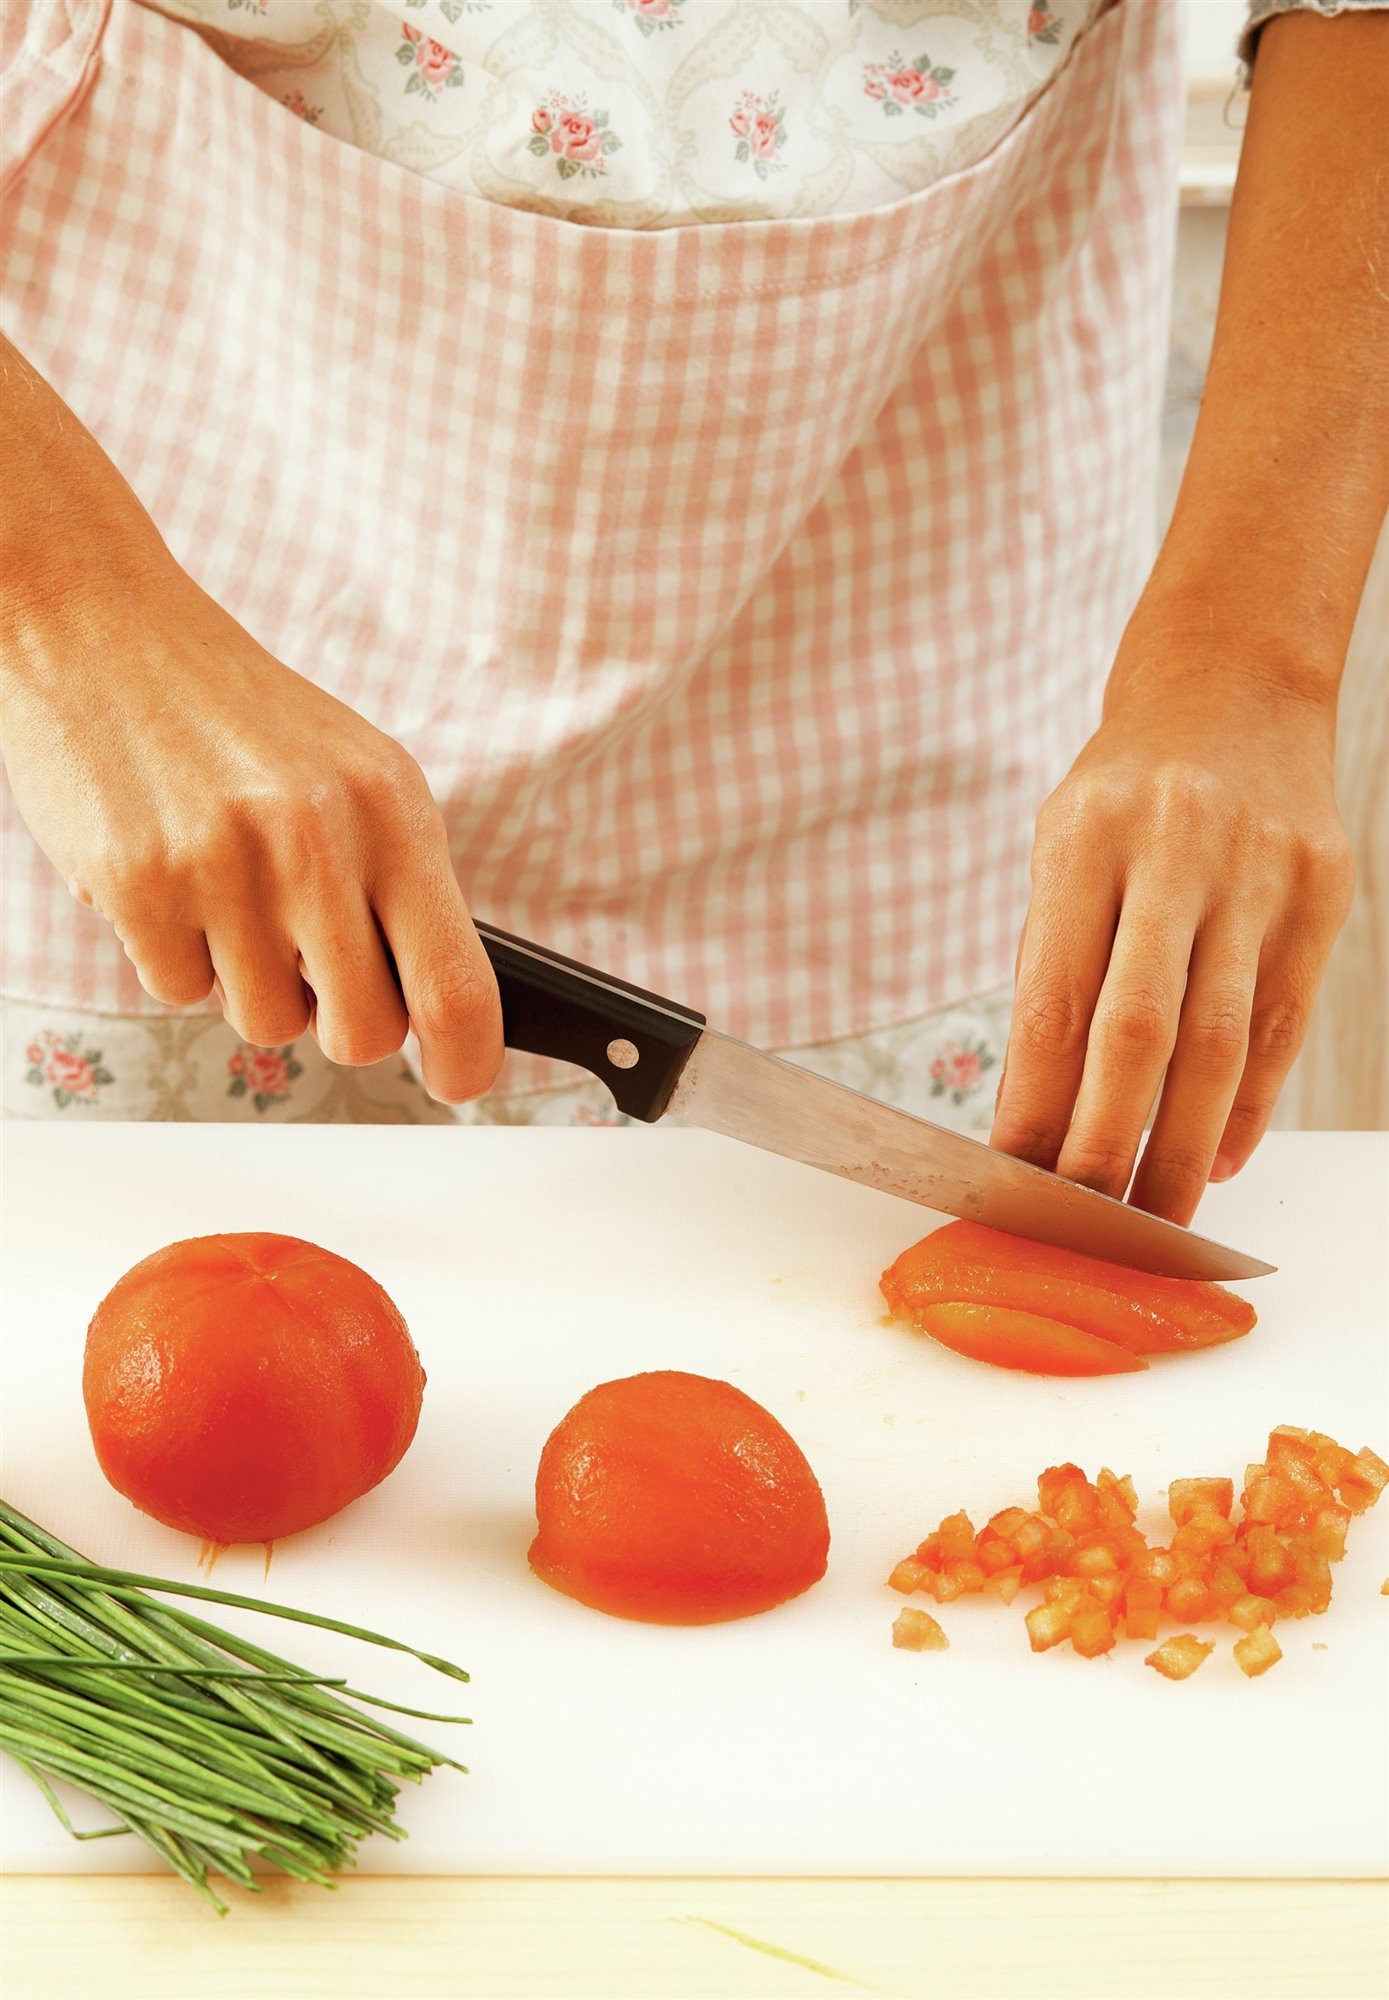 2. Corta el tomate en daditos